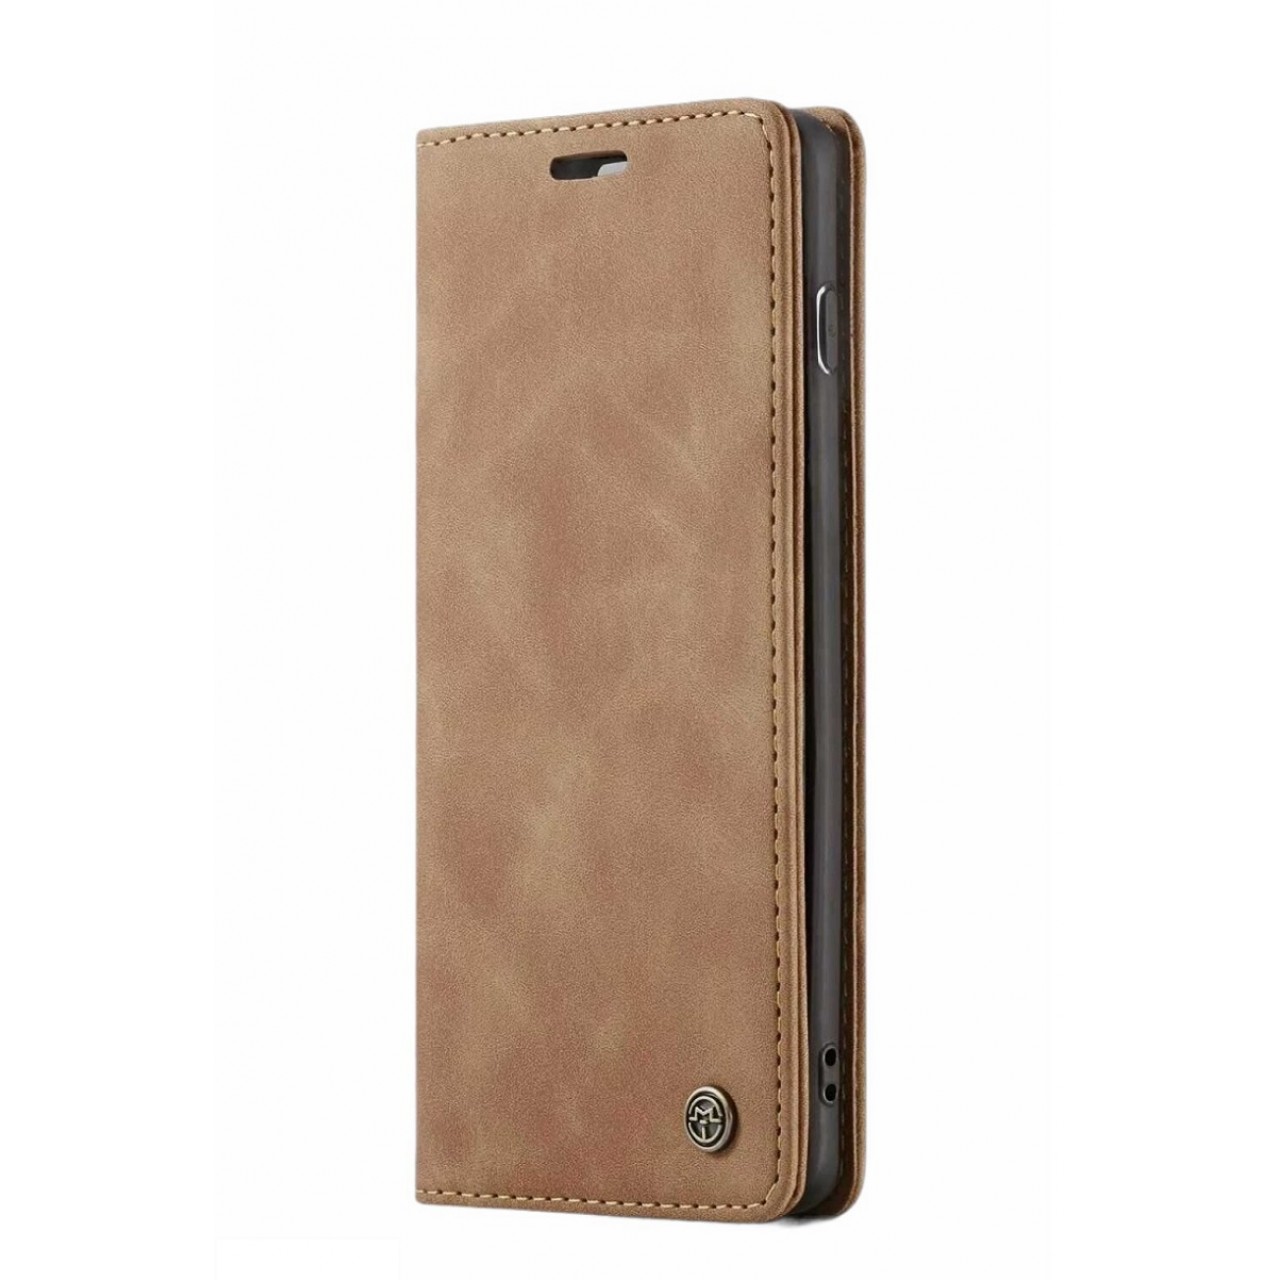 Θήκη Προστασίας Δερμάτινη Τύπου Wallet iPhone XS Max - Luxury Leather Flip Case Caseme - Tan